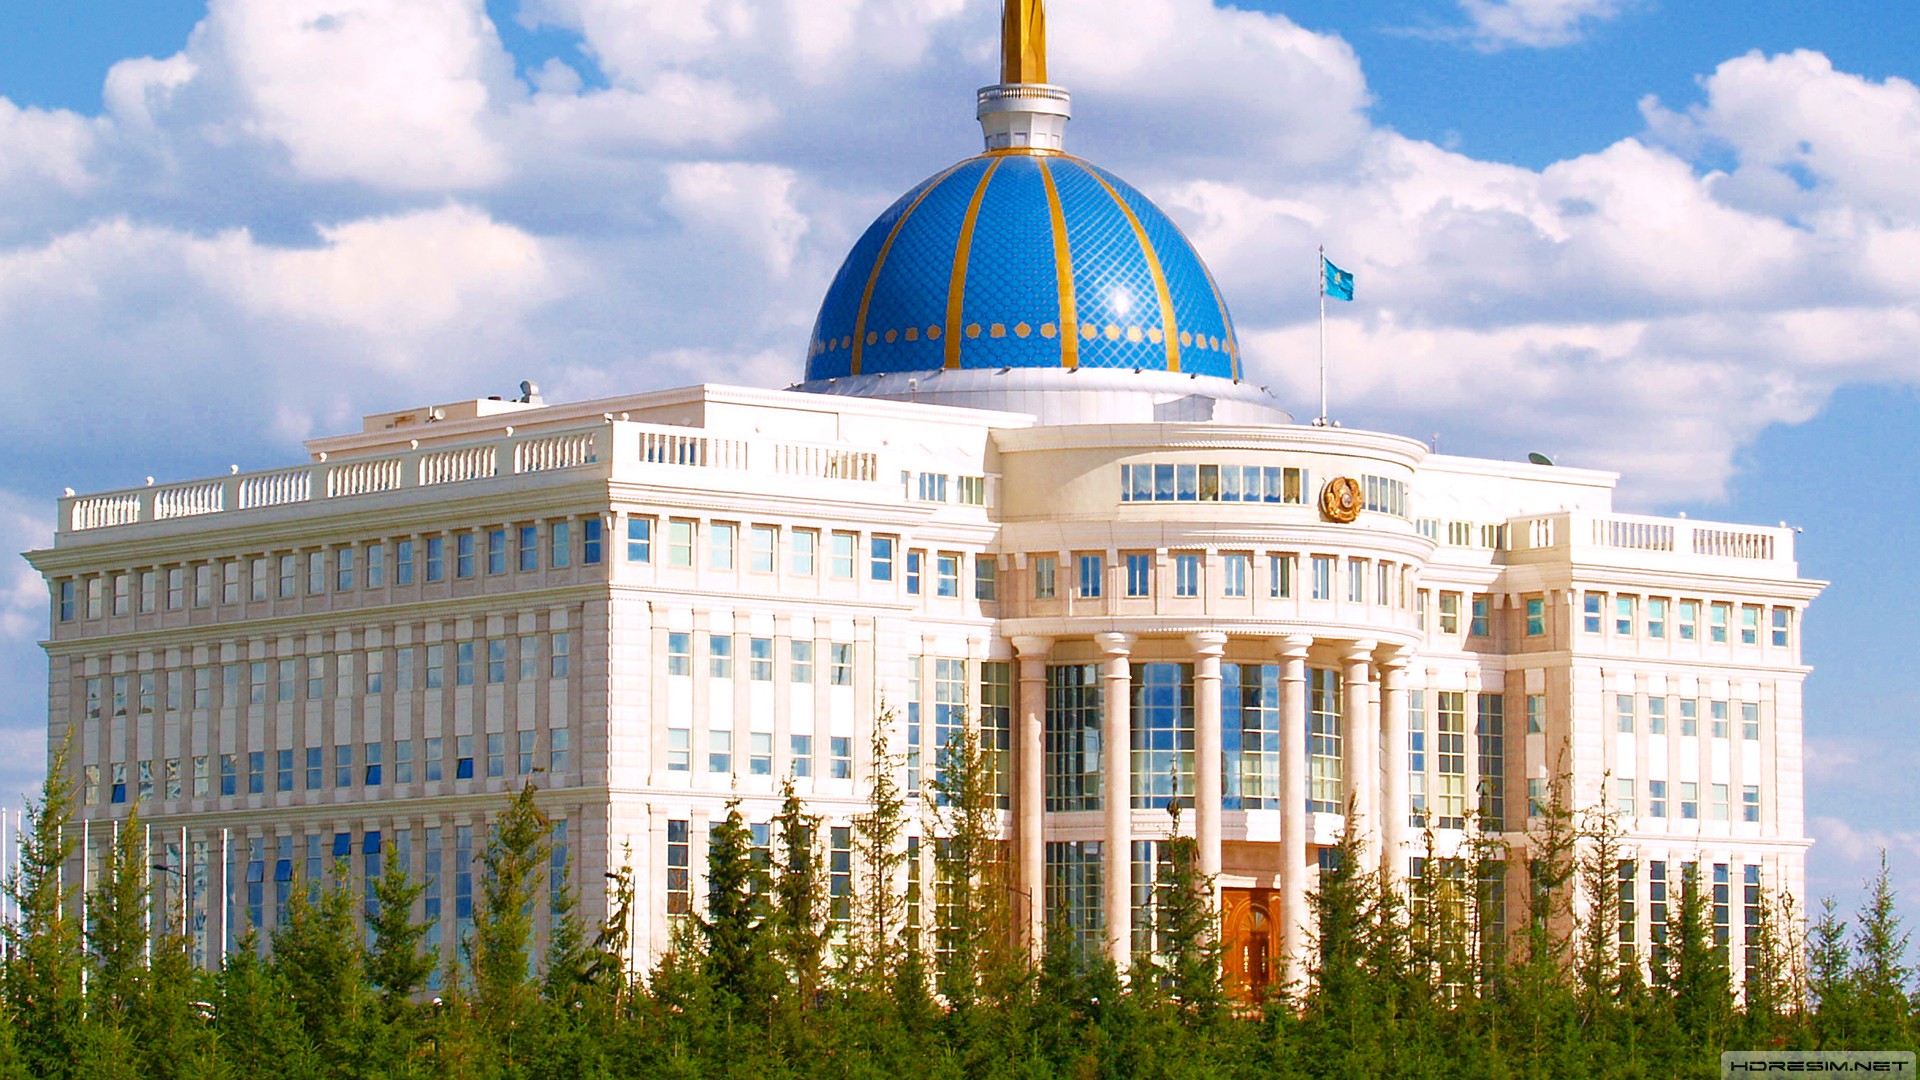 astana,şehir,kazakistan